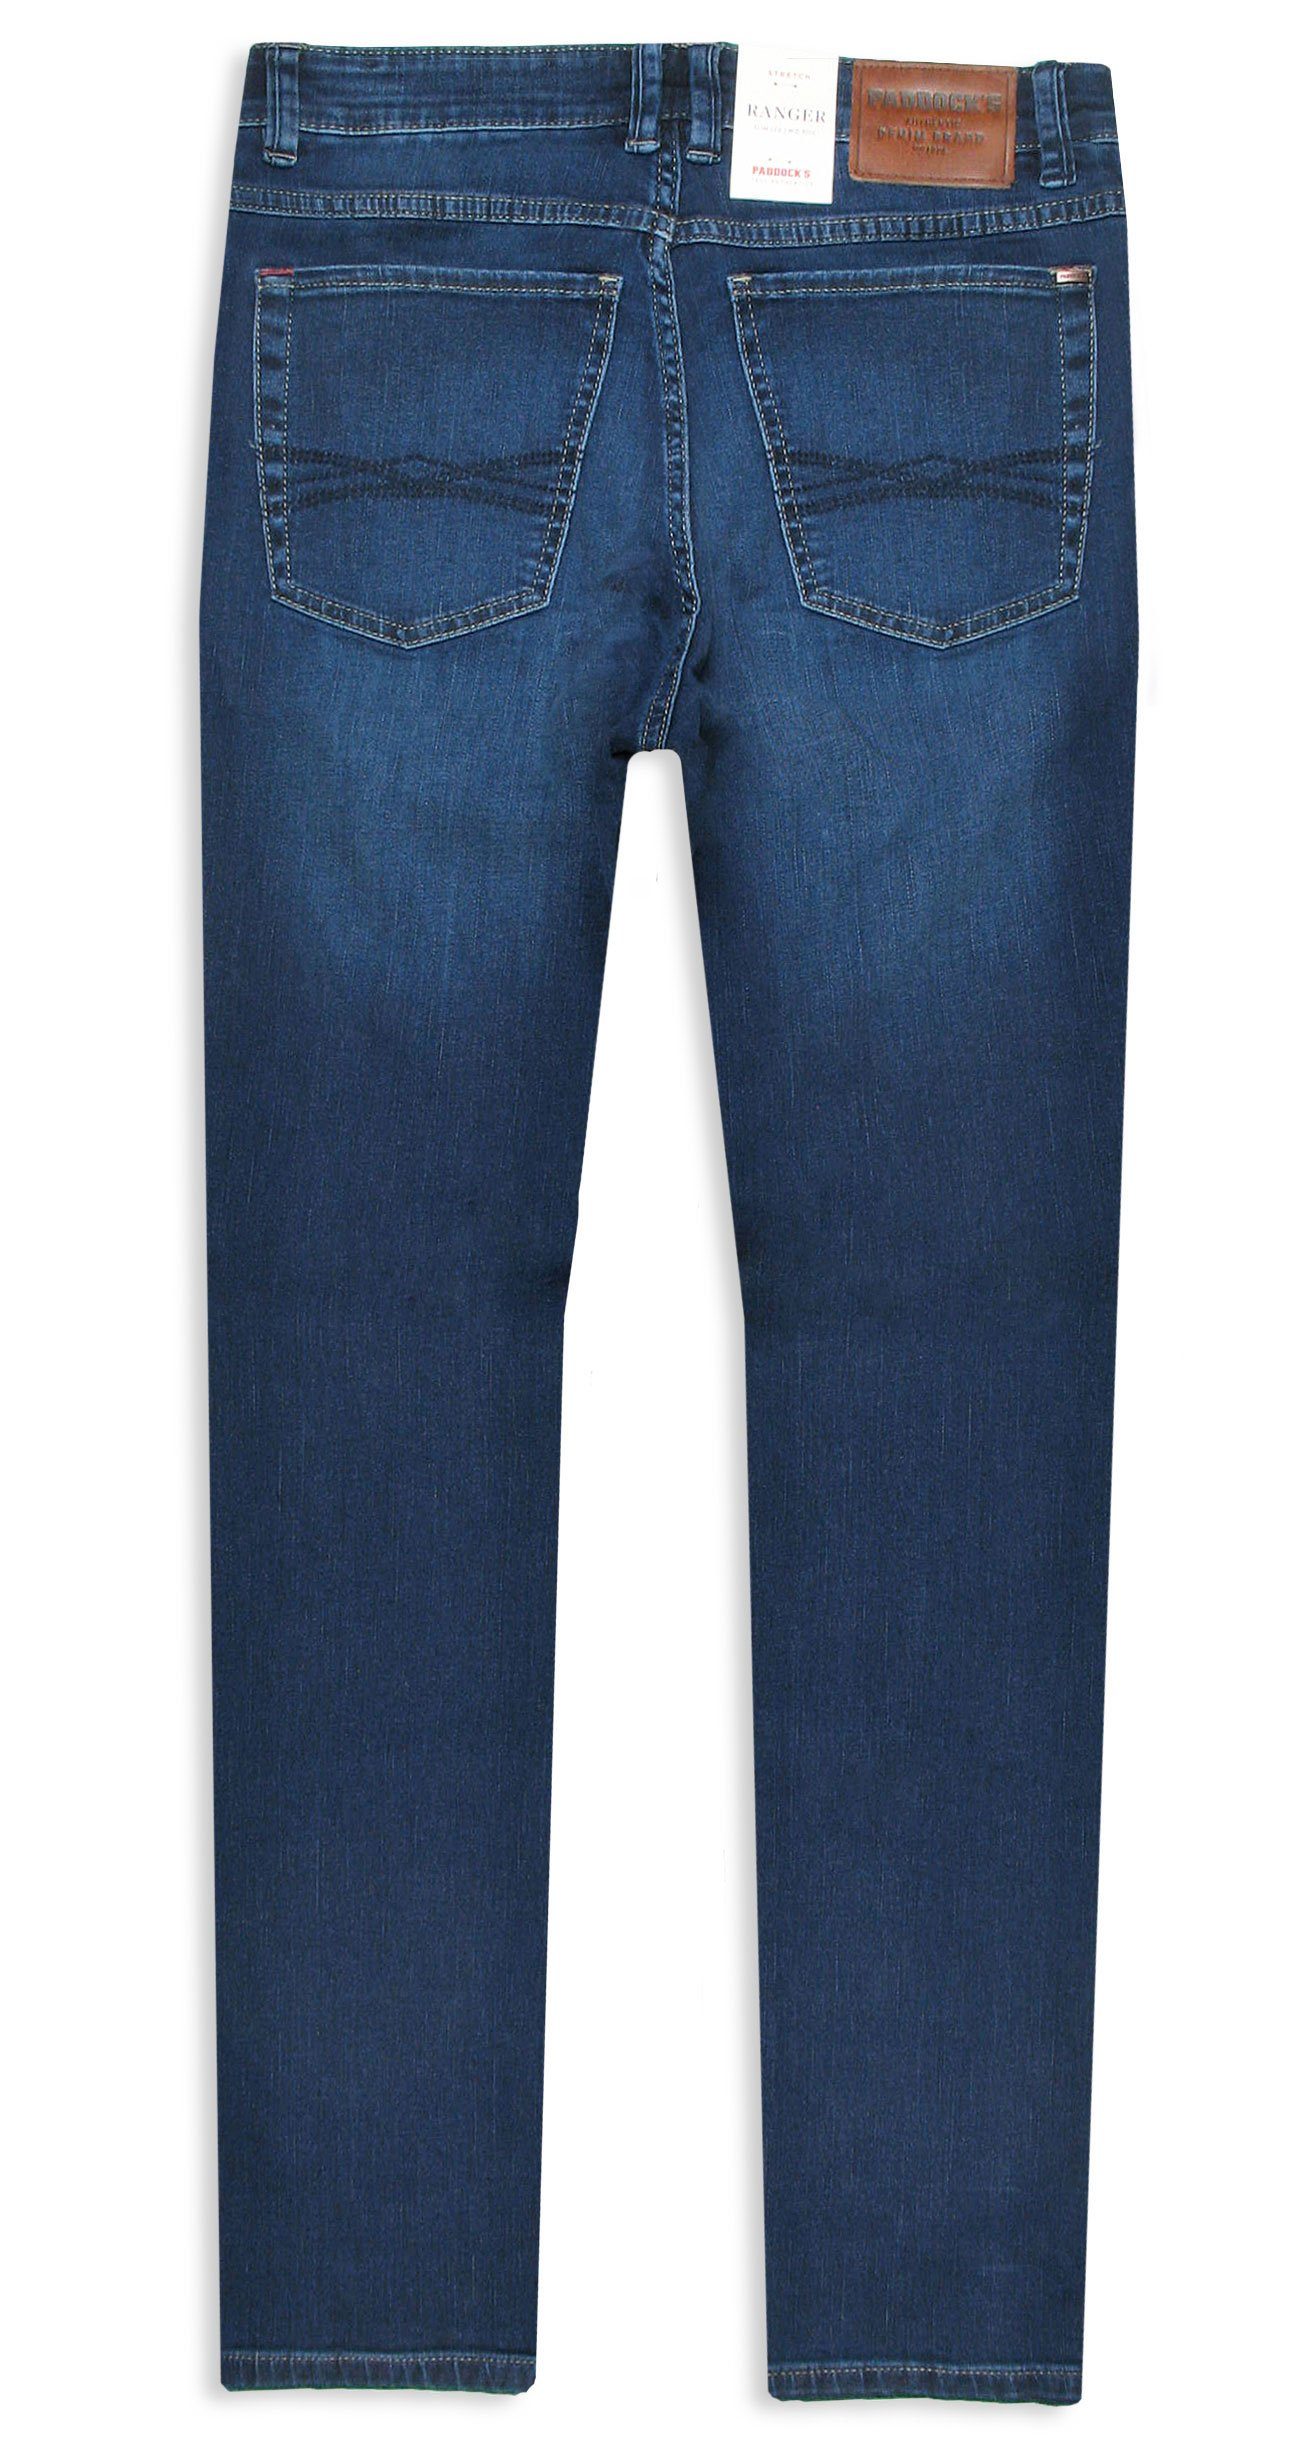 used & Paddock's Motion 5-Pocket-Jeans Stretch blue Comfort dark Denim Ranger